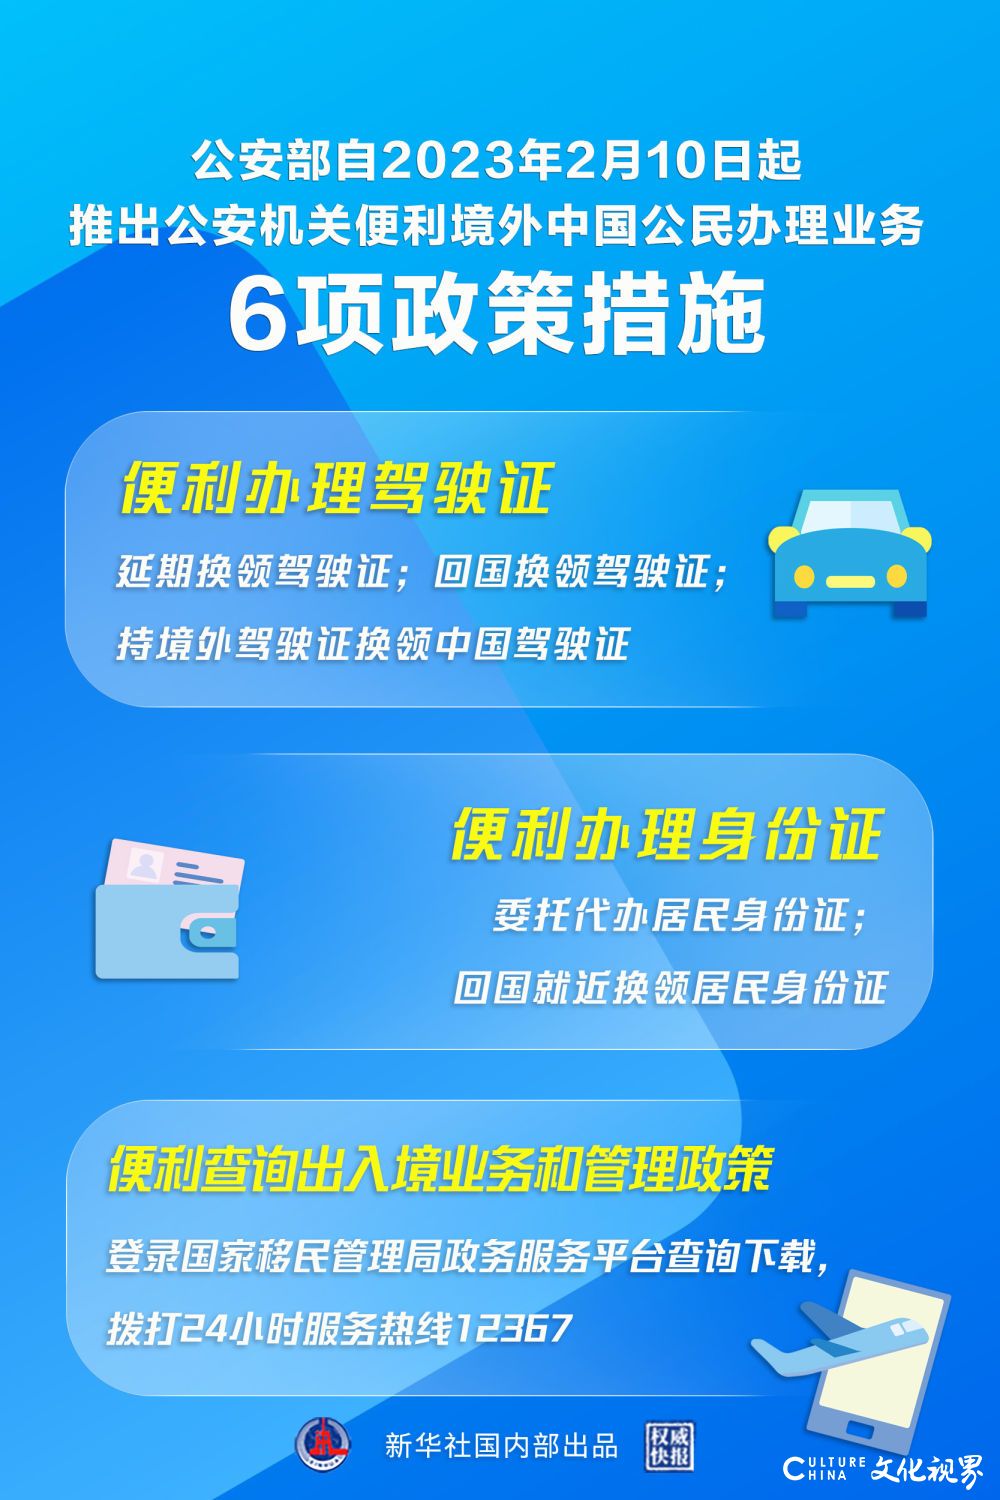 “延期办” “委托办”，公安部推出6项措施便利境外中国公民办理业务